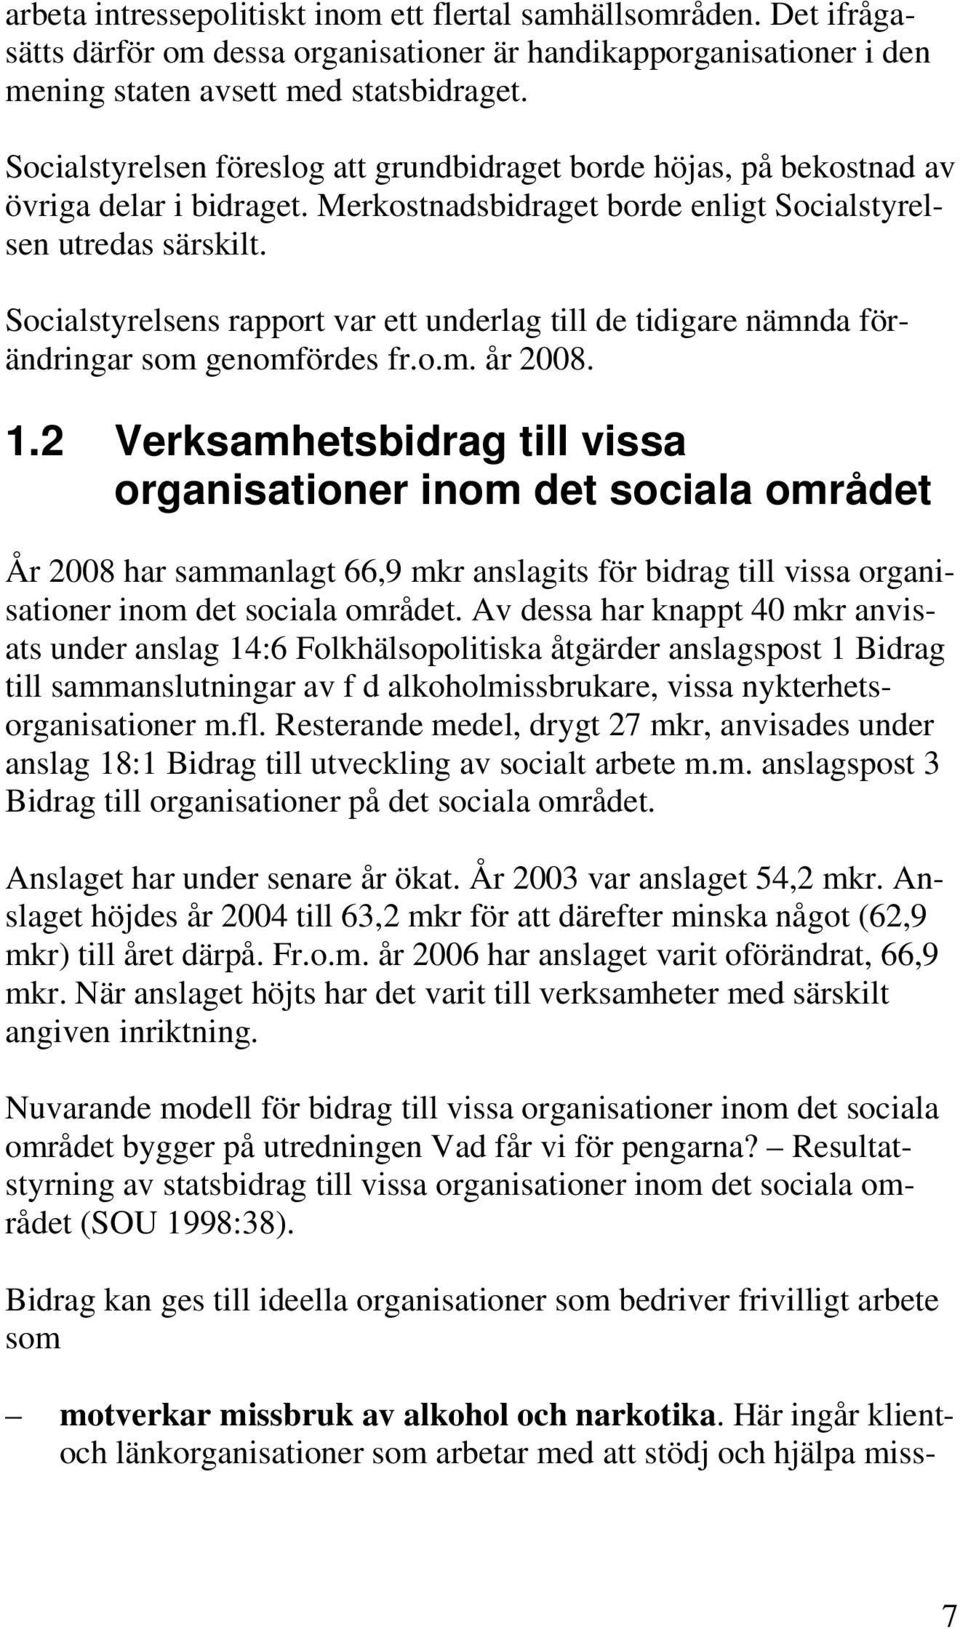 Socialstyrelsens rapport var ett underlag till de tidigare nämnda förändringar som genomfördes fr.o.m. år 2008. 1.